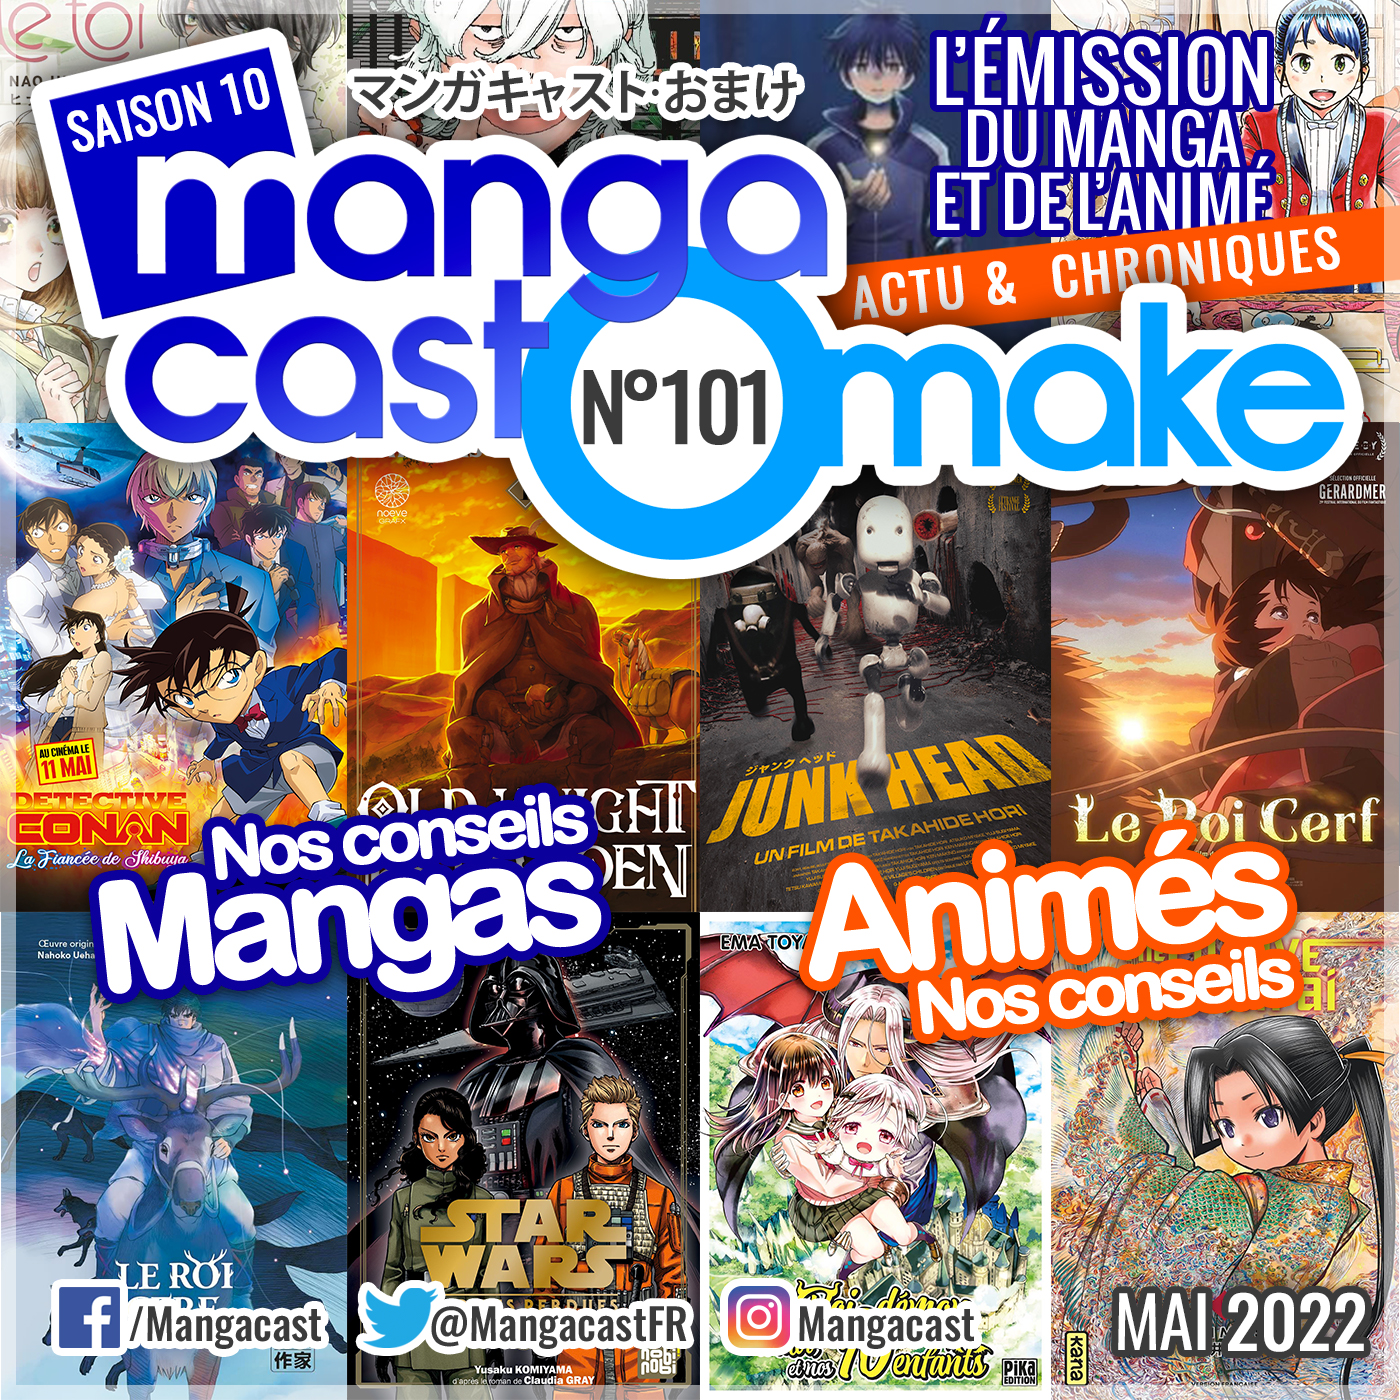 Cartouche de la UNE du Mangacast Omake n°101